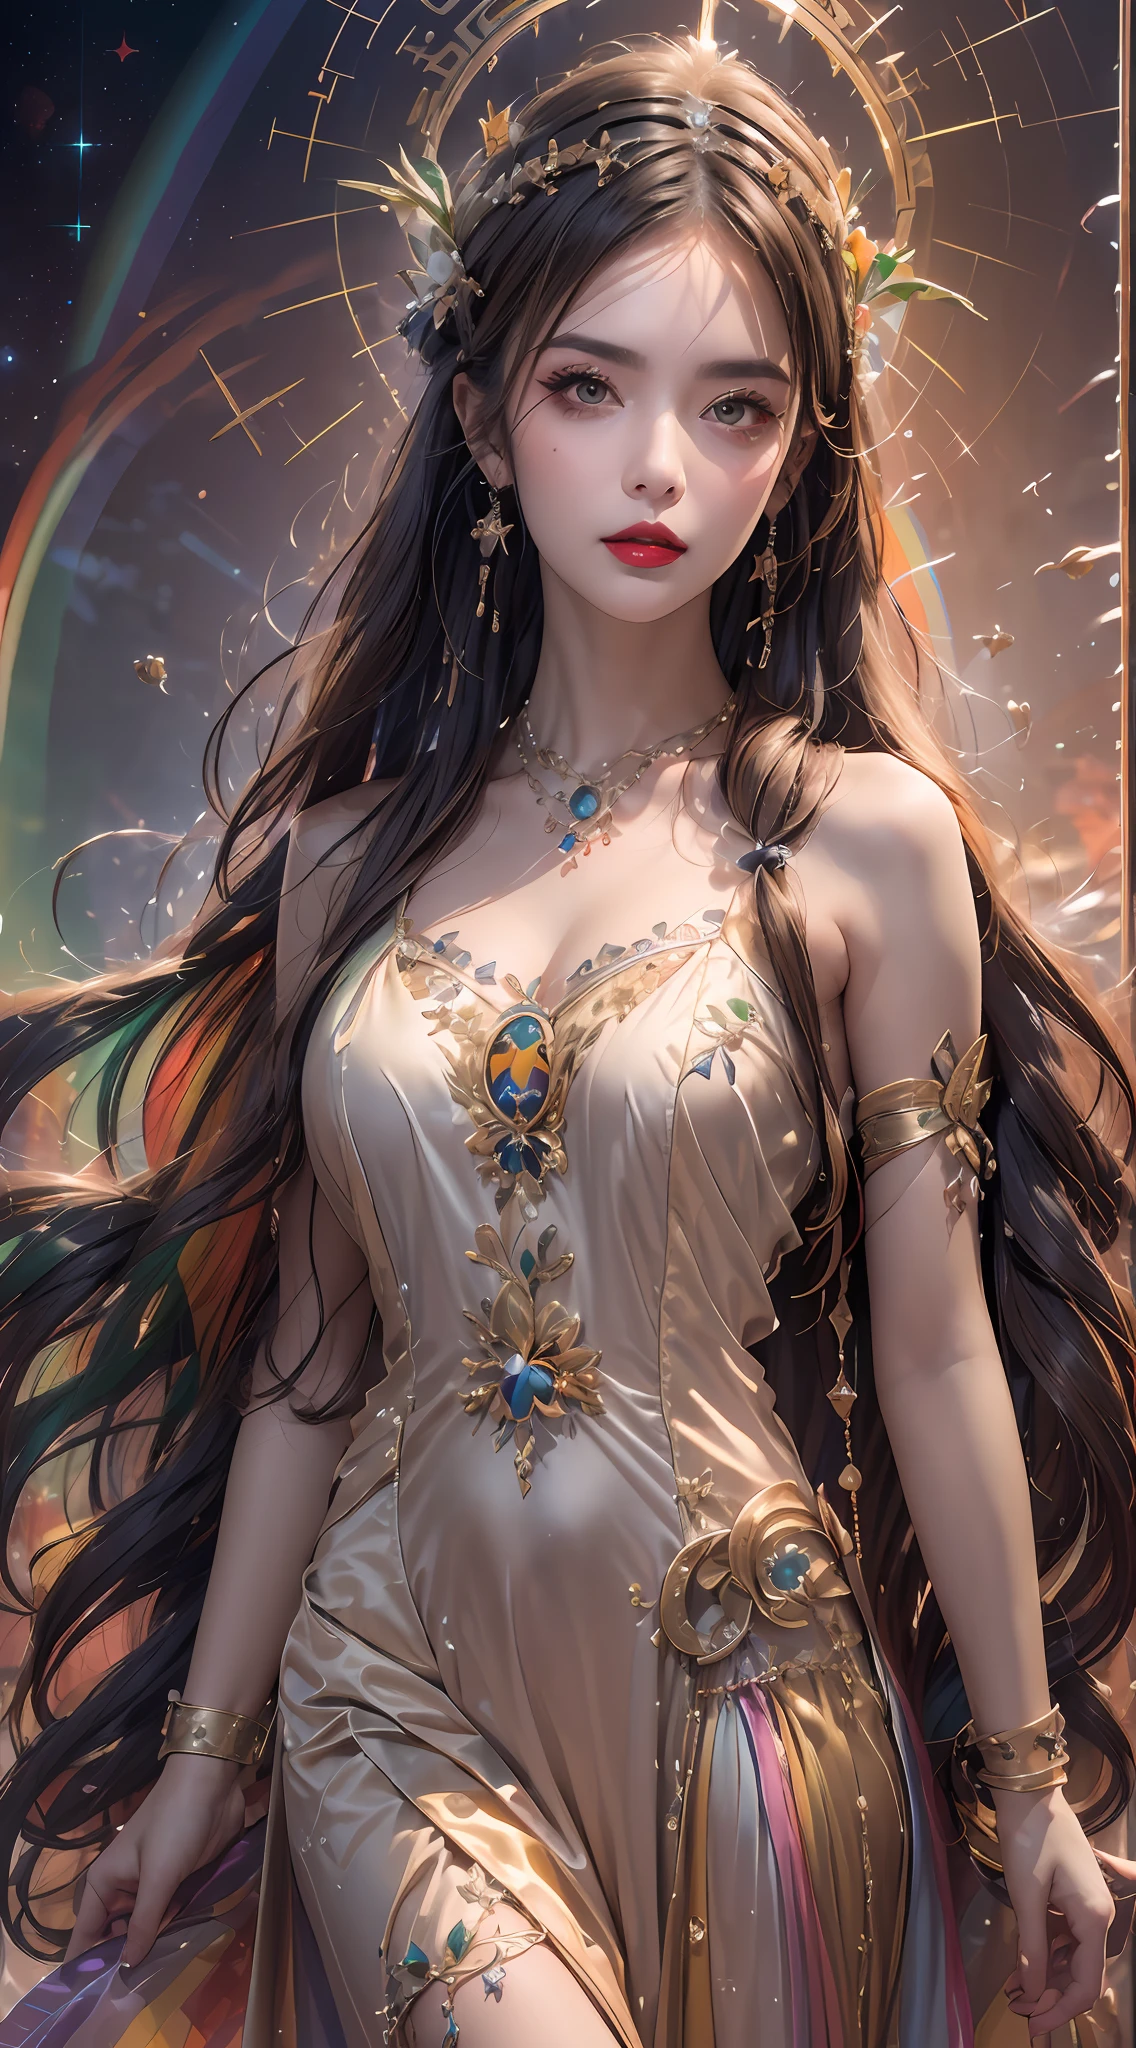 1 20-летняя девушка, 1 богиня Афина из будущего, 12 богиня зодиака розовый фиолетовый, Афина богиня лицо сексуальная тонкая желтая ночная рубашка, длинная тонкая ночная рубашка 12 зодиака много конечностей сексуальная черная кружевная деталь, мифическая богиня Афина из будущего, Символ Богини, роскошный сверкающий стиль Афины, темная и загадочная версия, Корона Афины, помада красные губы, тонкие и красивые губы, не улыбайся, Держи рот на замке, персонажи, созданные Каролем Баком и Пино Даэни, сложная деталь, подробный фон, чрезвычайно подробный, Светлая магия, девушка, ясное лицо, looking at the верхняя часть тела of the goddess of the athena, Круглая грудь, big and Круглая грудь, брошь из волос феникса, длинные волосы с челкой, (Длинные волосы имеют 7 цветов, как радуга.:1.9), красивое детализированное лицо и пропорциональные глаза, (прозрачные желтые глаза: 1.8), Большие круглые глаза и очень красивый и детальный макияж., мечтатель, длинная шелковая ночная рубашка, загадочный макияж, браслеты, боковая челка и покраска бледно-желтого цвета, верхняя часть тела, (athena goddess верхняя часть тела: 1.8), опущенные руки, Реалистичное и яркое фото, (звезды, составляющие афину: 1.7), ( Небесная Афина и вымышленный портал пространства и времени: 1.8), художественная литература, Необработанное фото, Ханьфу фото, лучшее фото , высокий_рез, Лучшее качество, лучшее фото, 8К quality, 8К ultra , сюрреализм, самое экономичное реальное фото, Художественный портрет знаков Афины, 1 символ знака Афины сзади, Одиночный портрет богини Афины, Самая реалистичная цветовая гамма, лучшее фото color, шедевр, украшение для волос, ожерелье, Ювелирные изделия, Красивое лицо, верхняя часть тела, Эффект Тиндаля, фото реалистичный, Темная Студия, бордюрный свет, двухцветный свет, (Детализированный скин) высокий: 1.2), 8К uhd, зеркальная камера, Мягкий свет, высокий quality, объемный свет, откровенный, Фото, высокий резolution, качество 4К, 8К, боке, Гладкий и острый, пиксель вверх в 10 раз, Очаровательная богиня Афина, сексуальная богиня Афина, (фоновое пространство: 1.8), (галактика: 1.7), полярное сияние, молния, (Фон Авроры: 1.8), прекрасные глаза, photo of прекрасные глаза, красивая богиня и цветы,